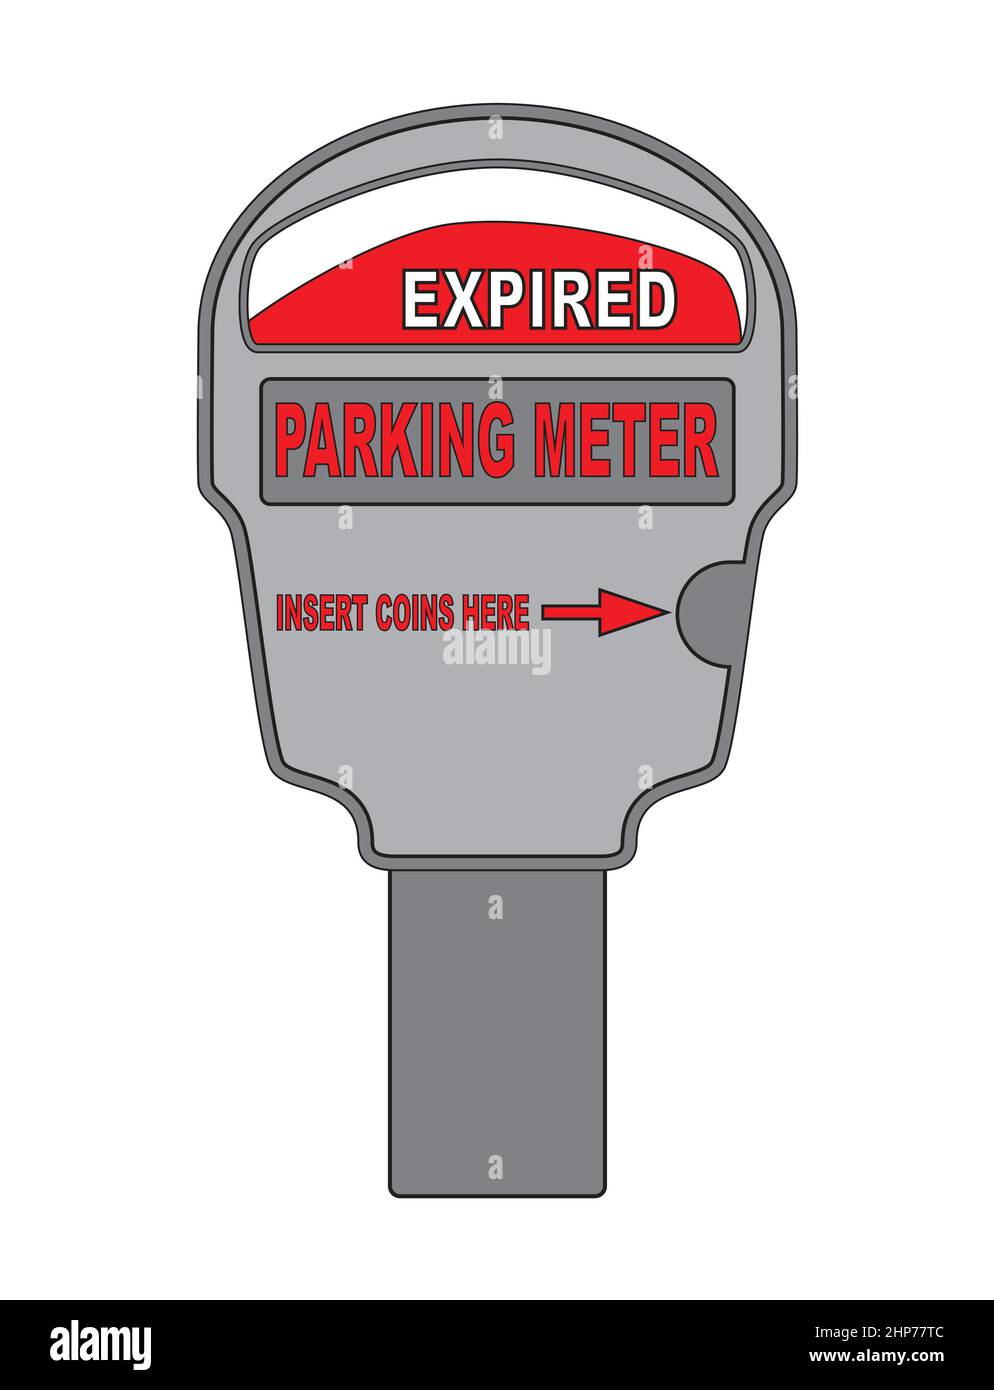 Parking Meter Expired Stock Vector